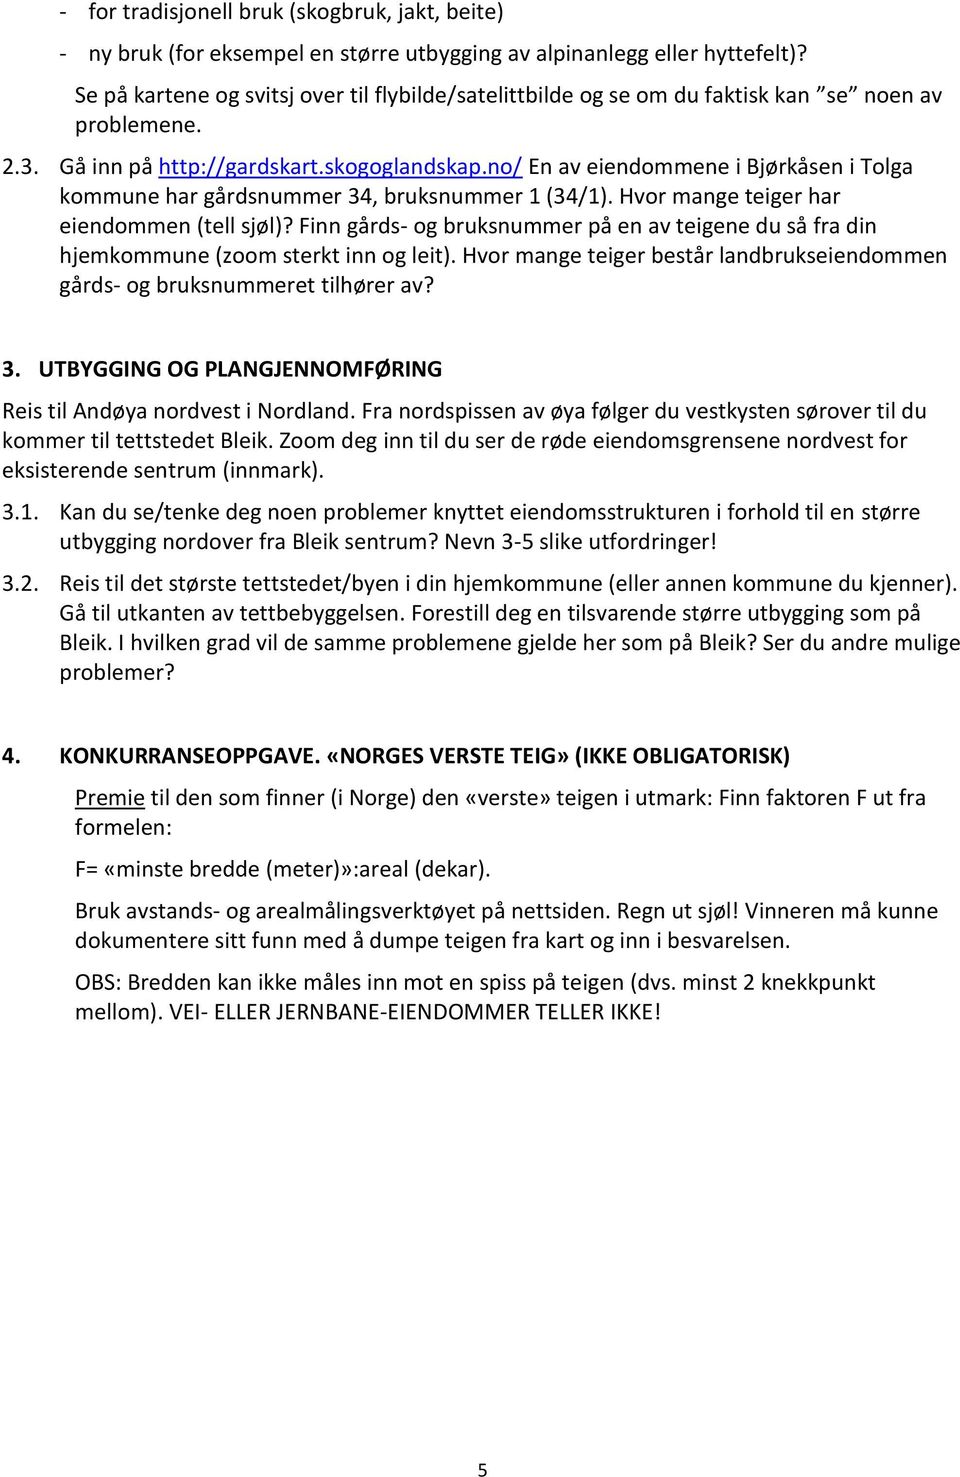 no/ En av eiendommene i Bjørkåsen i Tolga kommune har gårdsnummer 34, bruksnummer 1 (34/1). Hvor mange teiger har eiendommen (tell sjøl)?